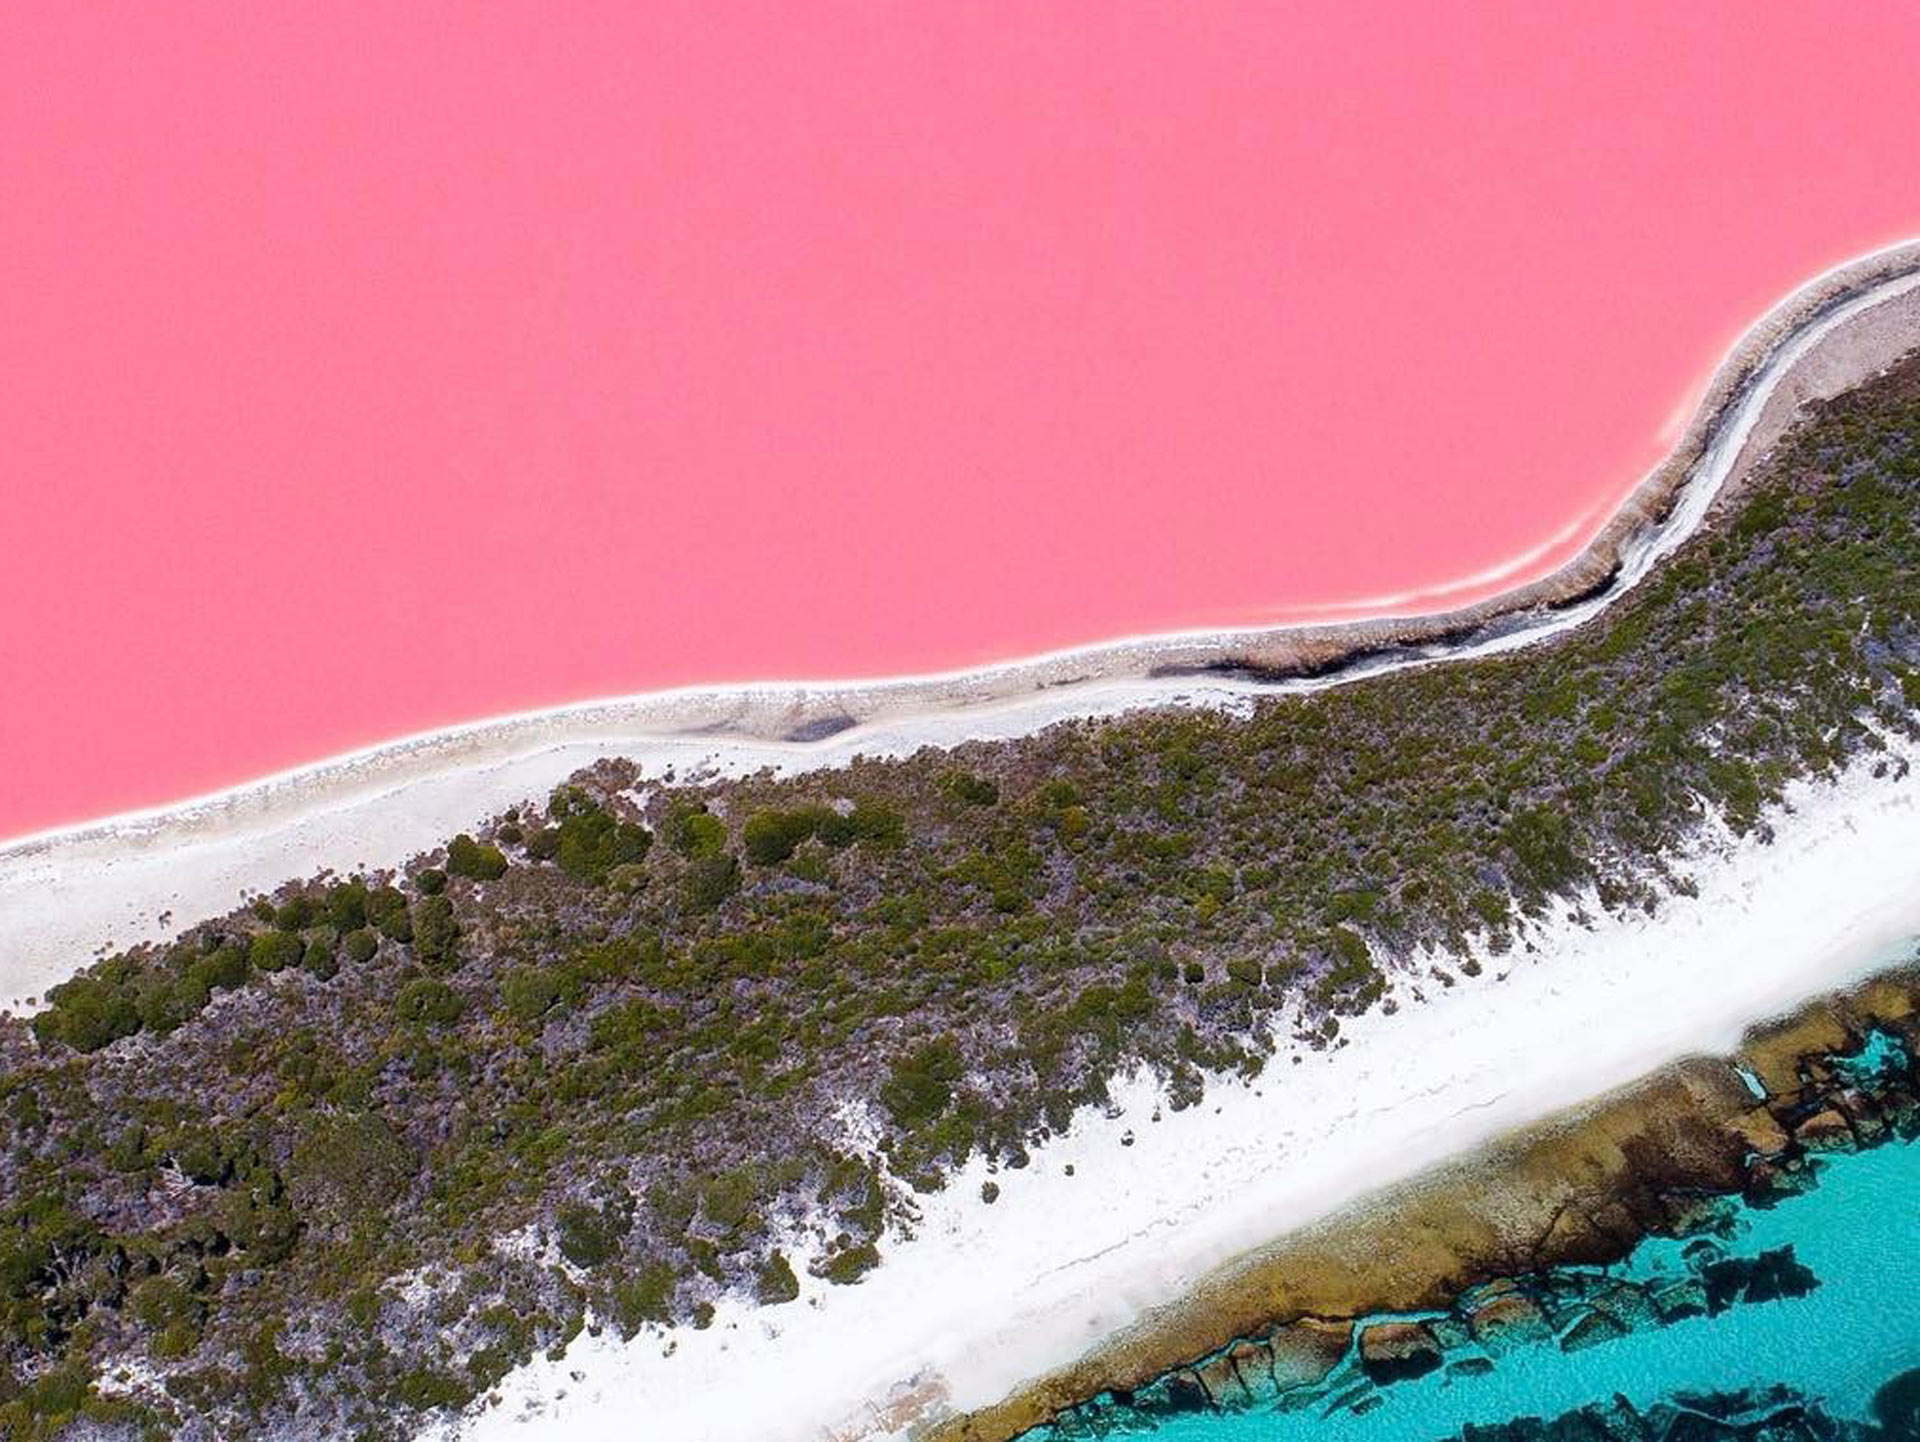 Lake Hillier pink western australia image credit salty wings instagram